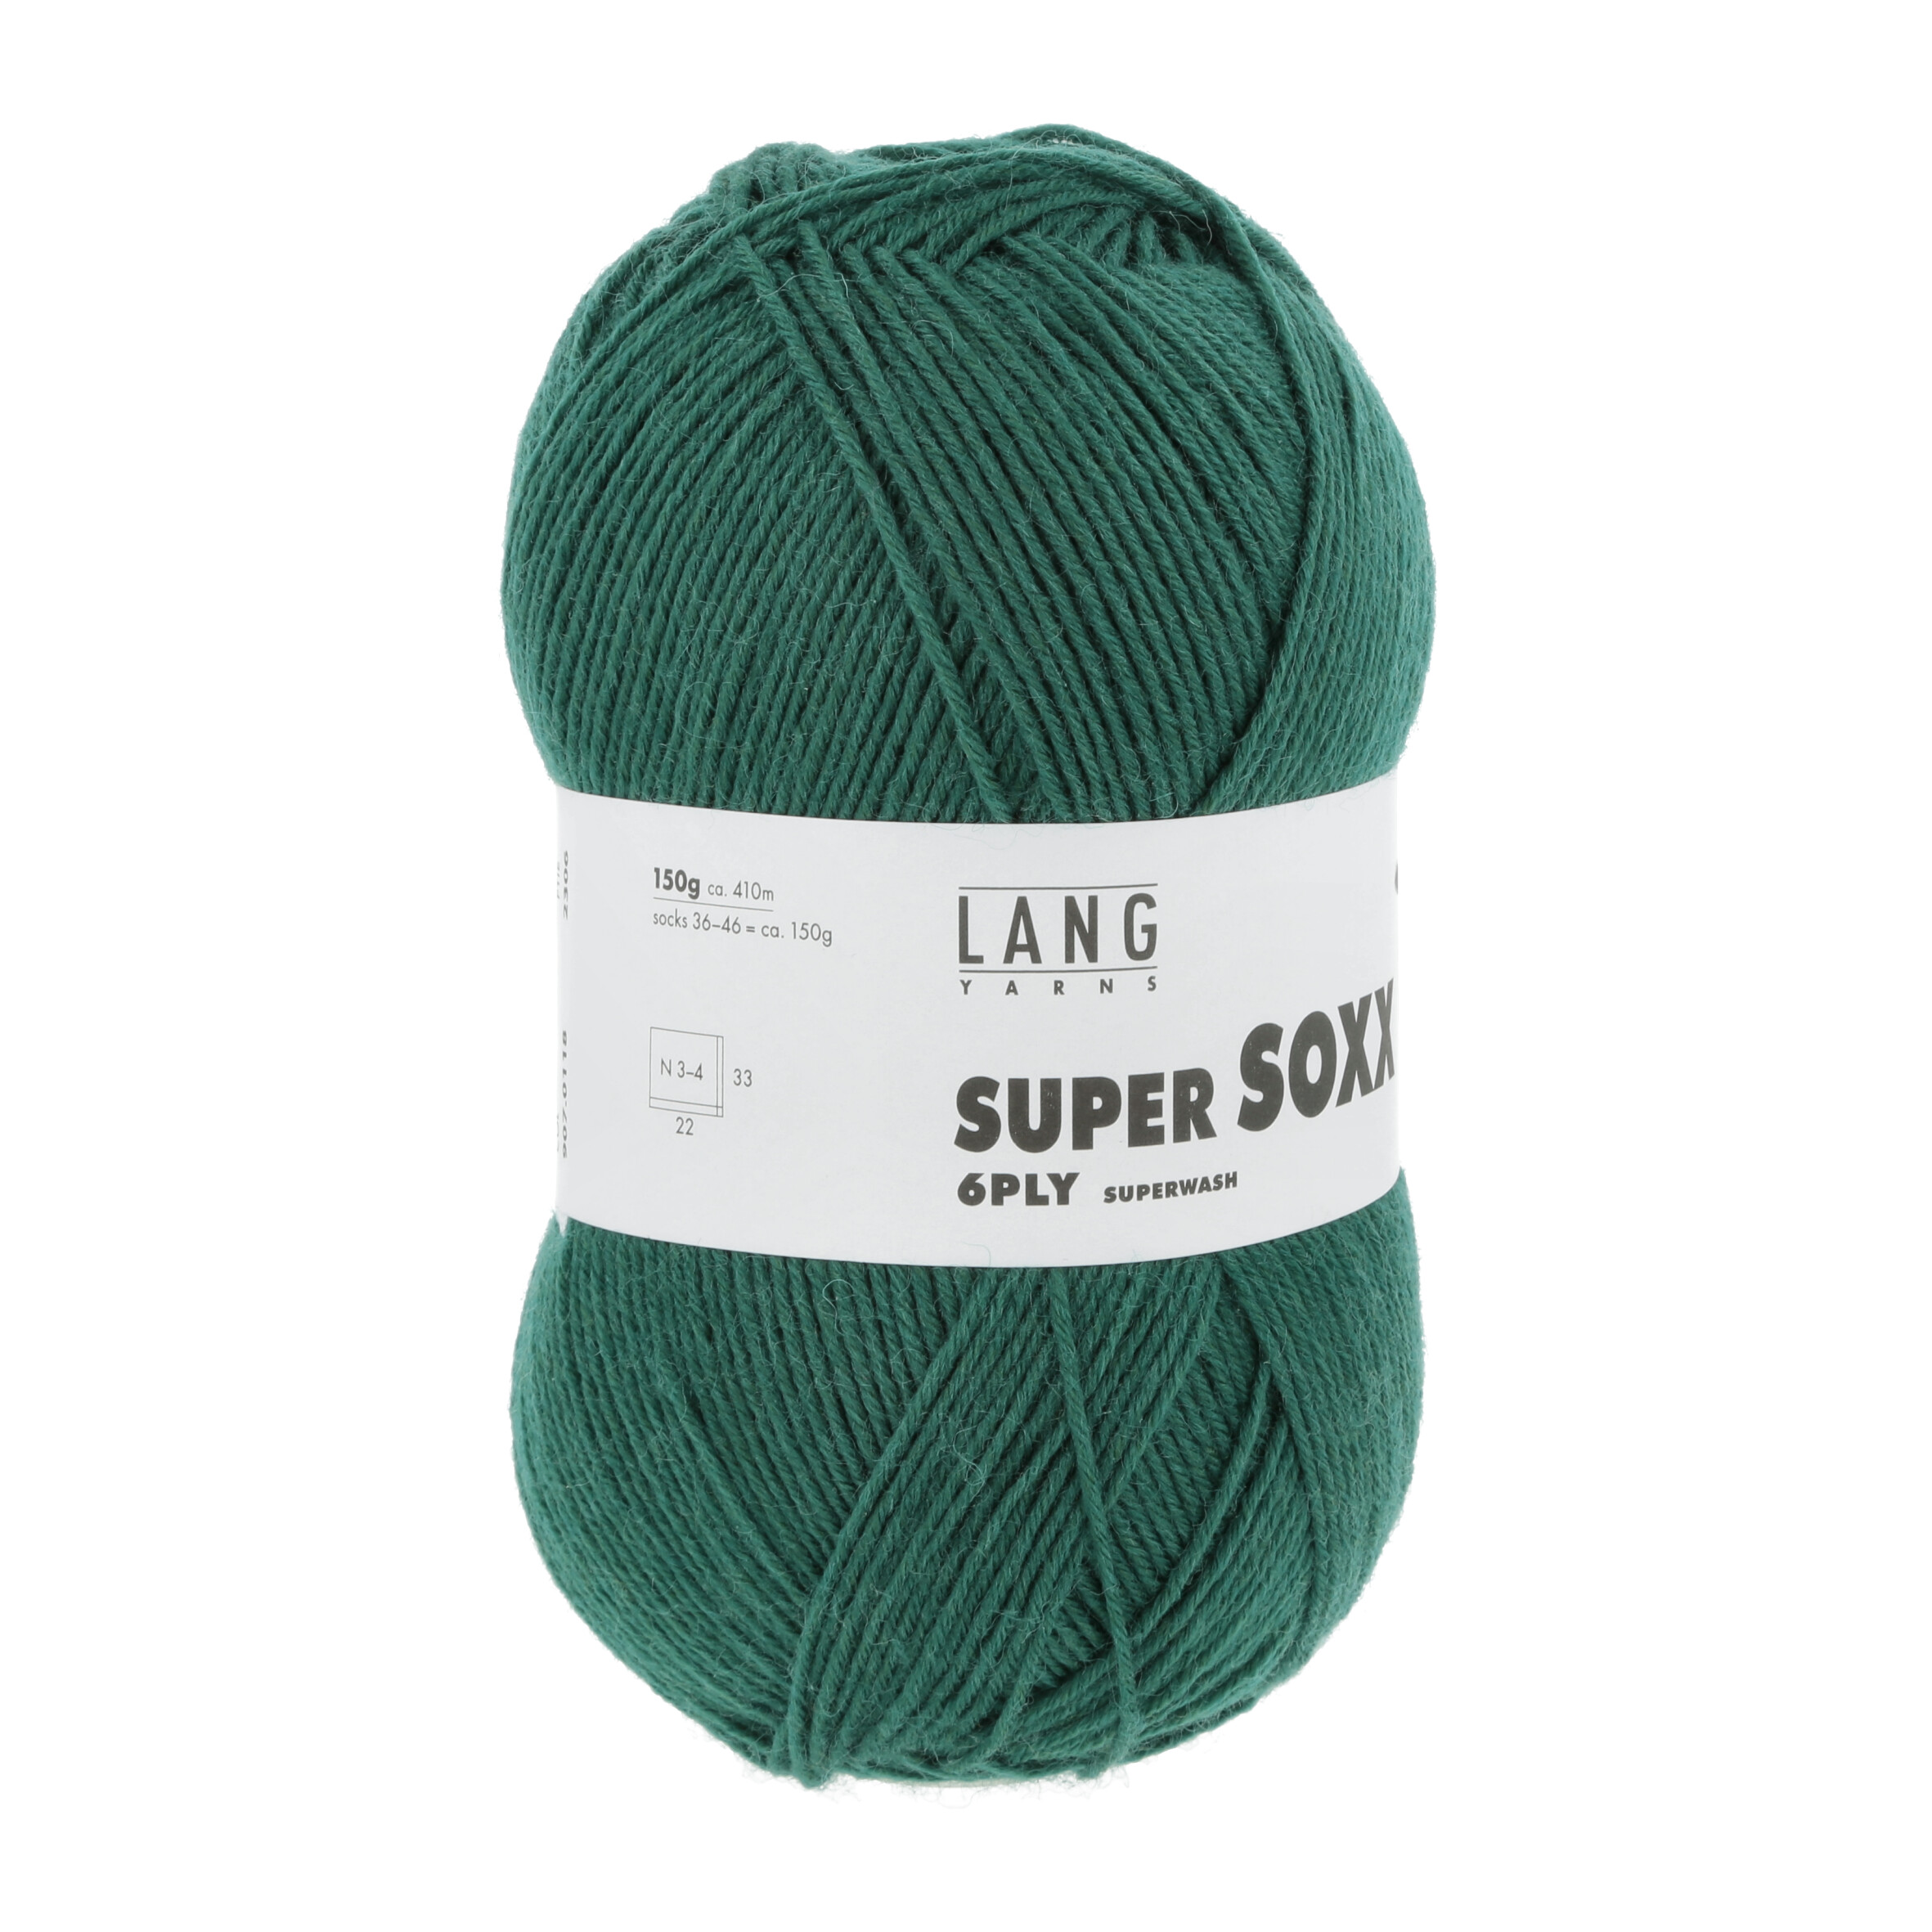 LANG SUPER SOXX  6PLY 0118 VERDE 150GR